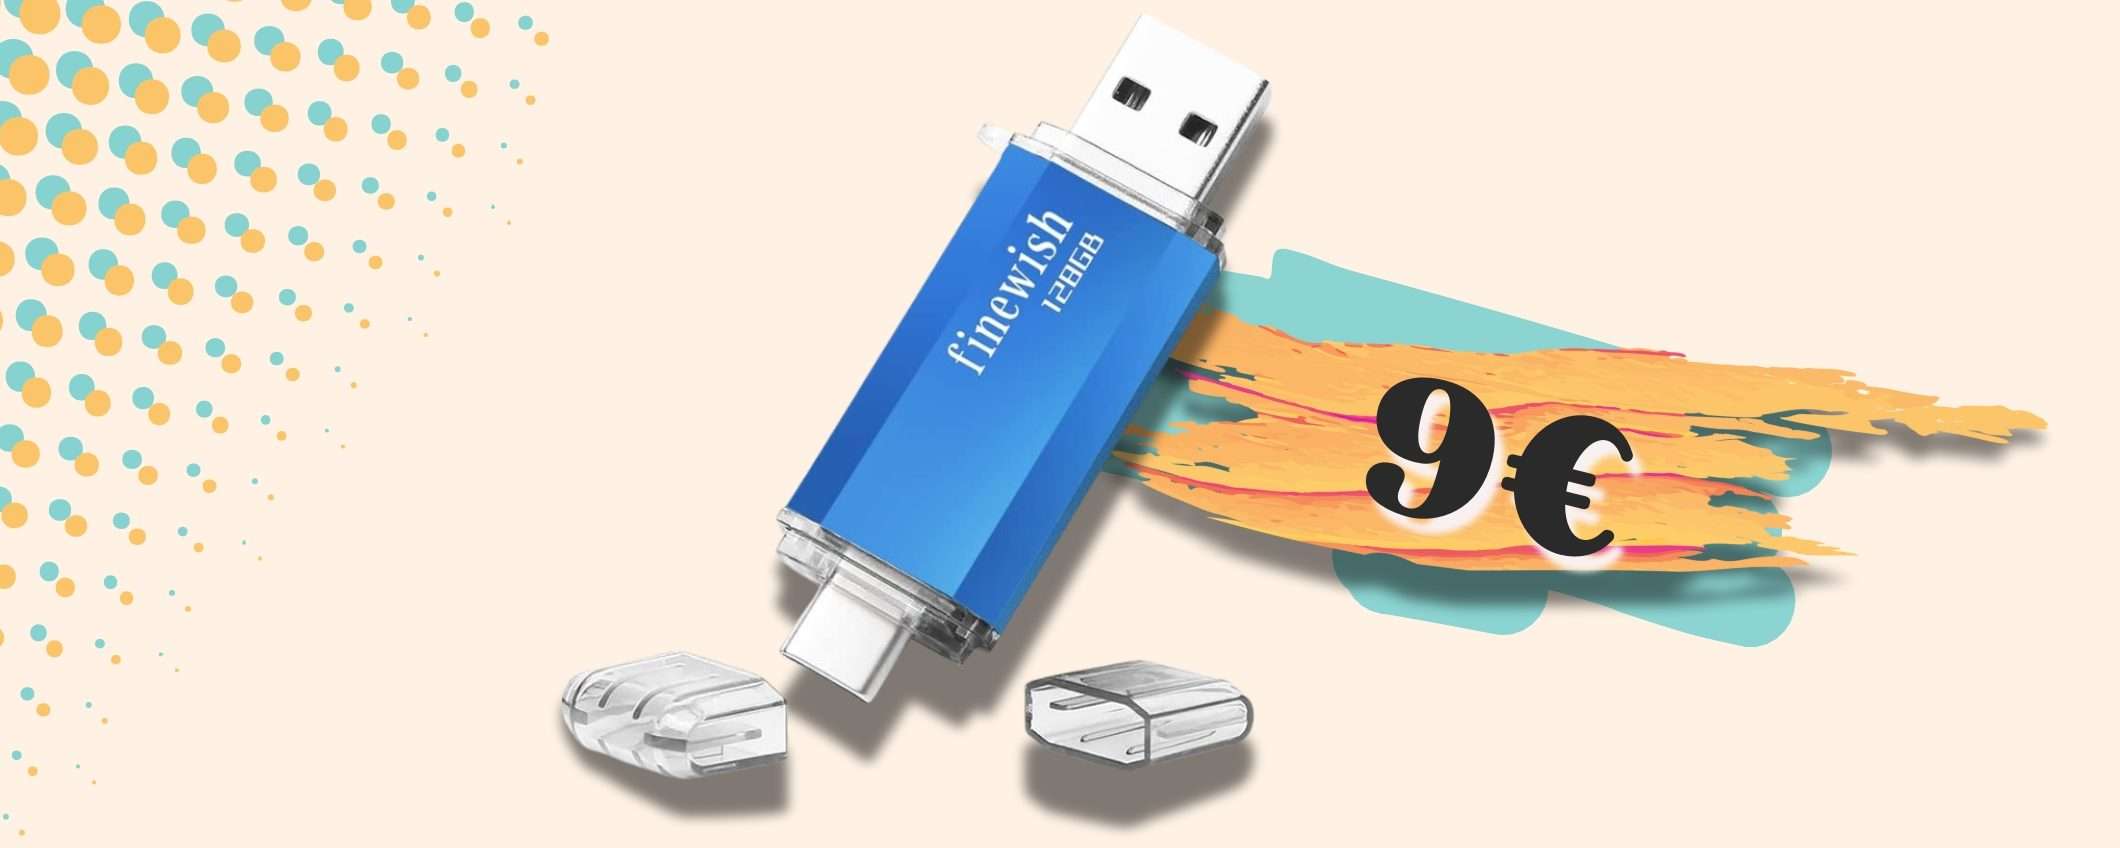 Chiavetta USB 128GB con doppi connettori per NON farne MAI a meno (9€)